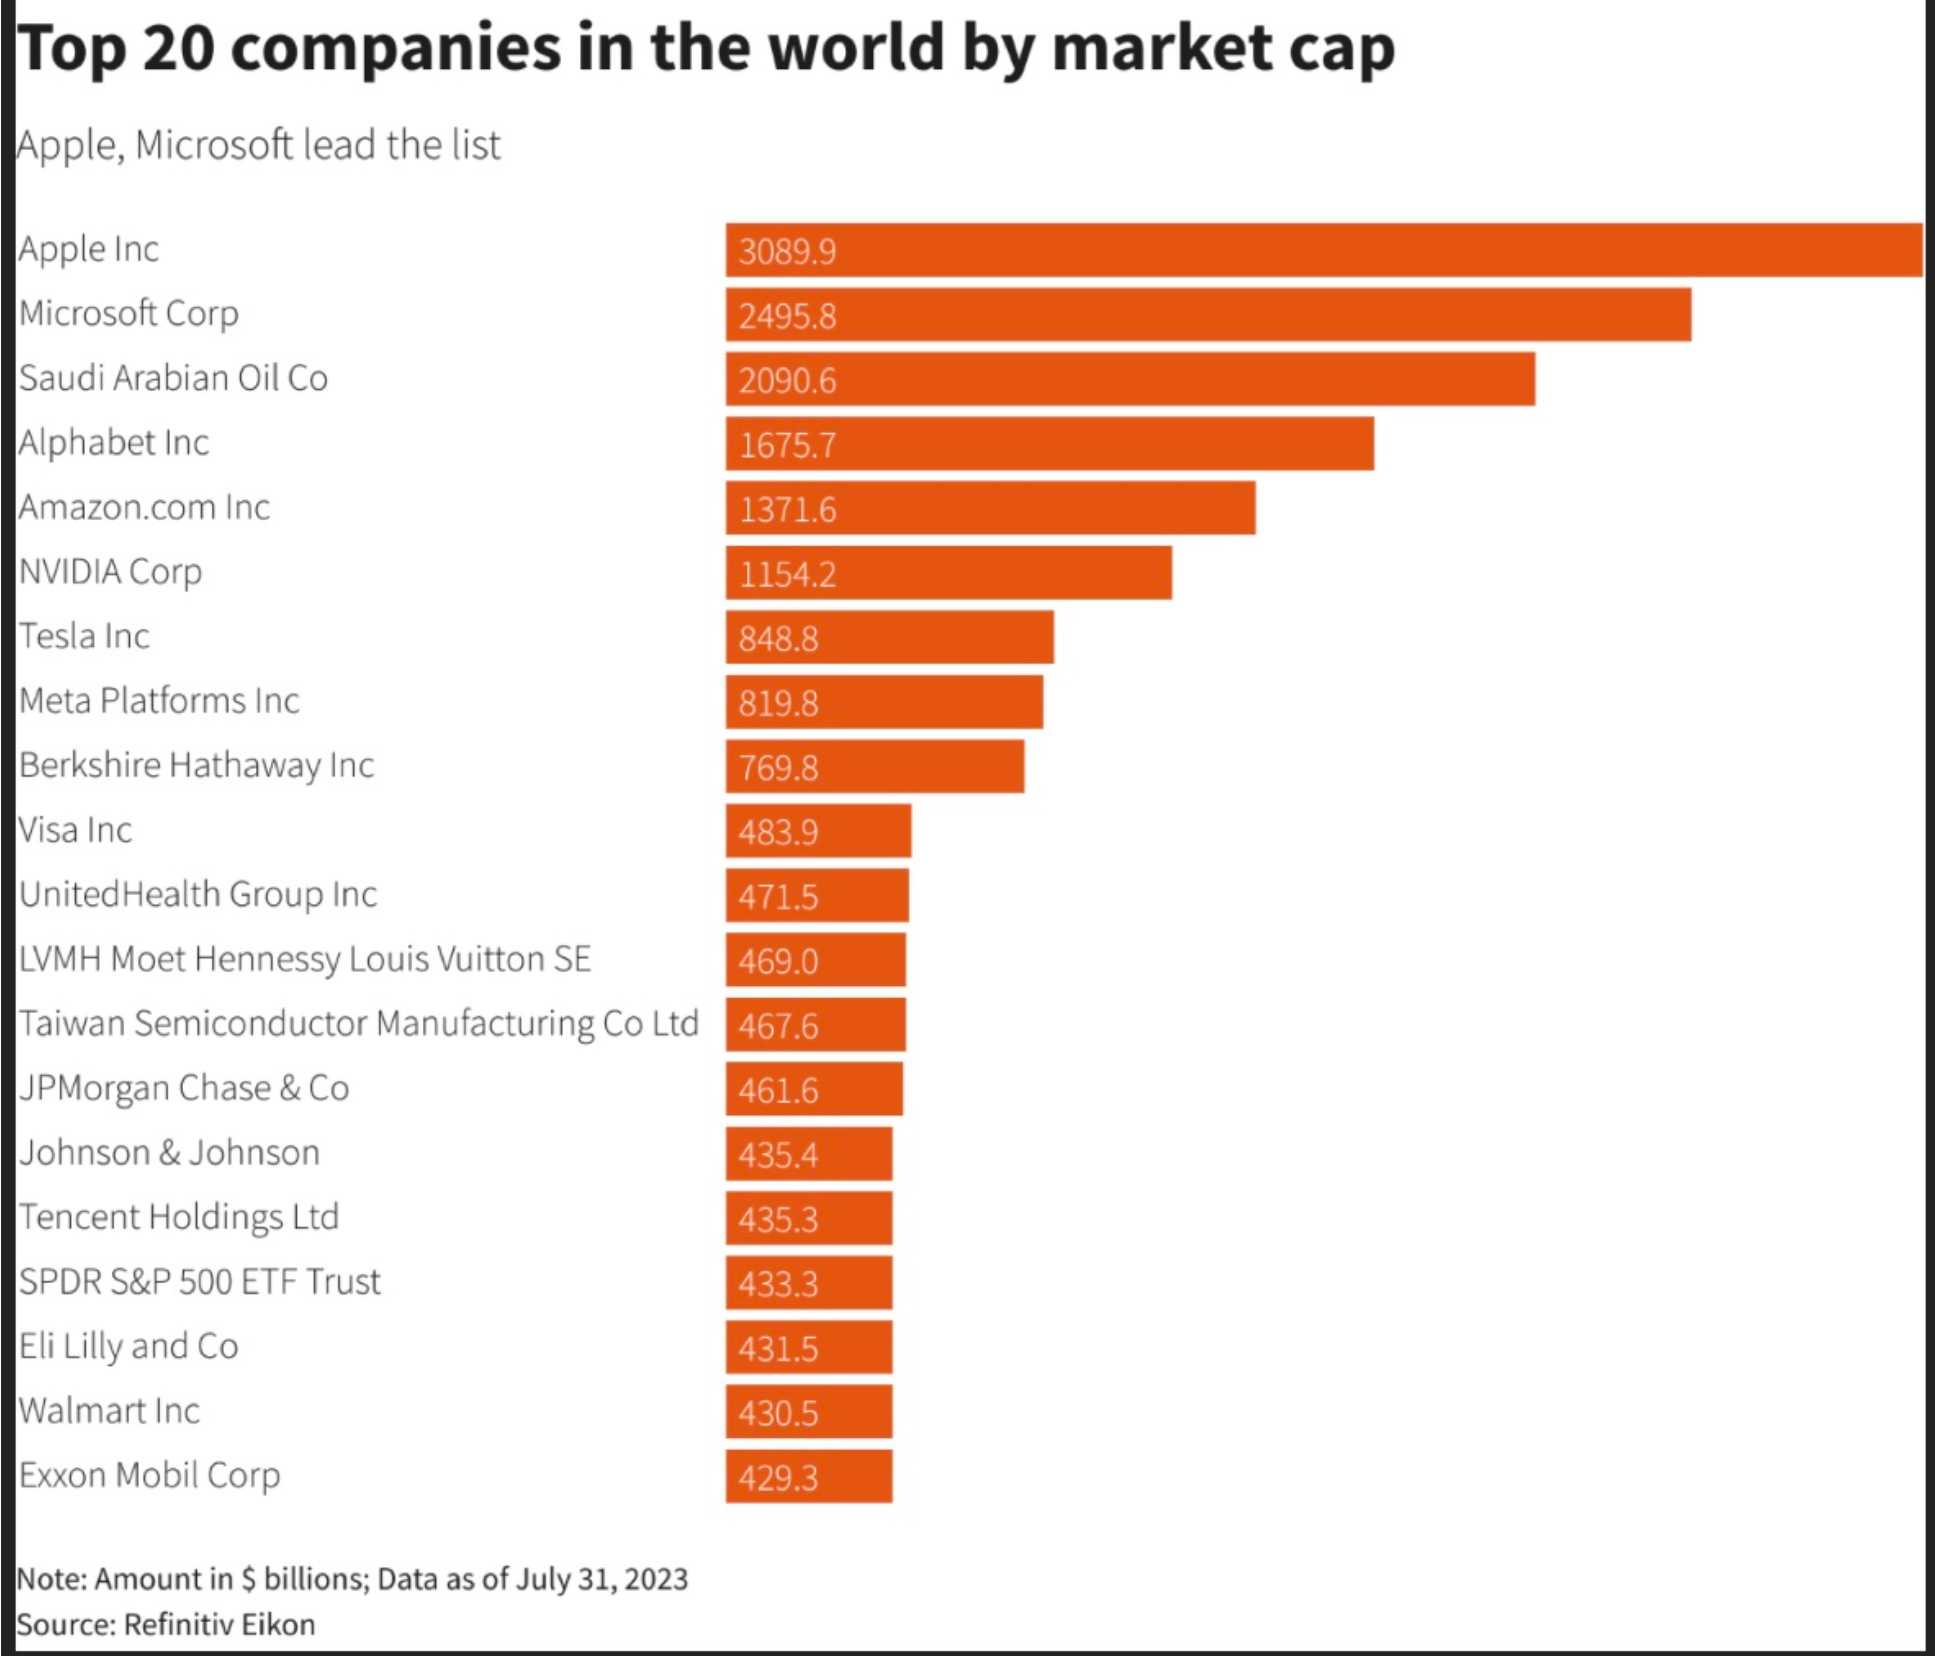 Apple e Microsoft sempre le due aziende più importanti per capitalizzazione di mercato